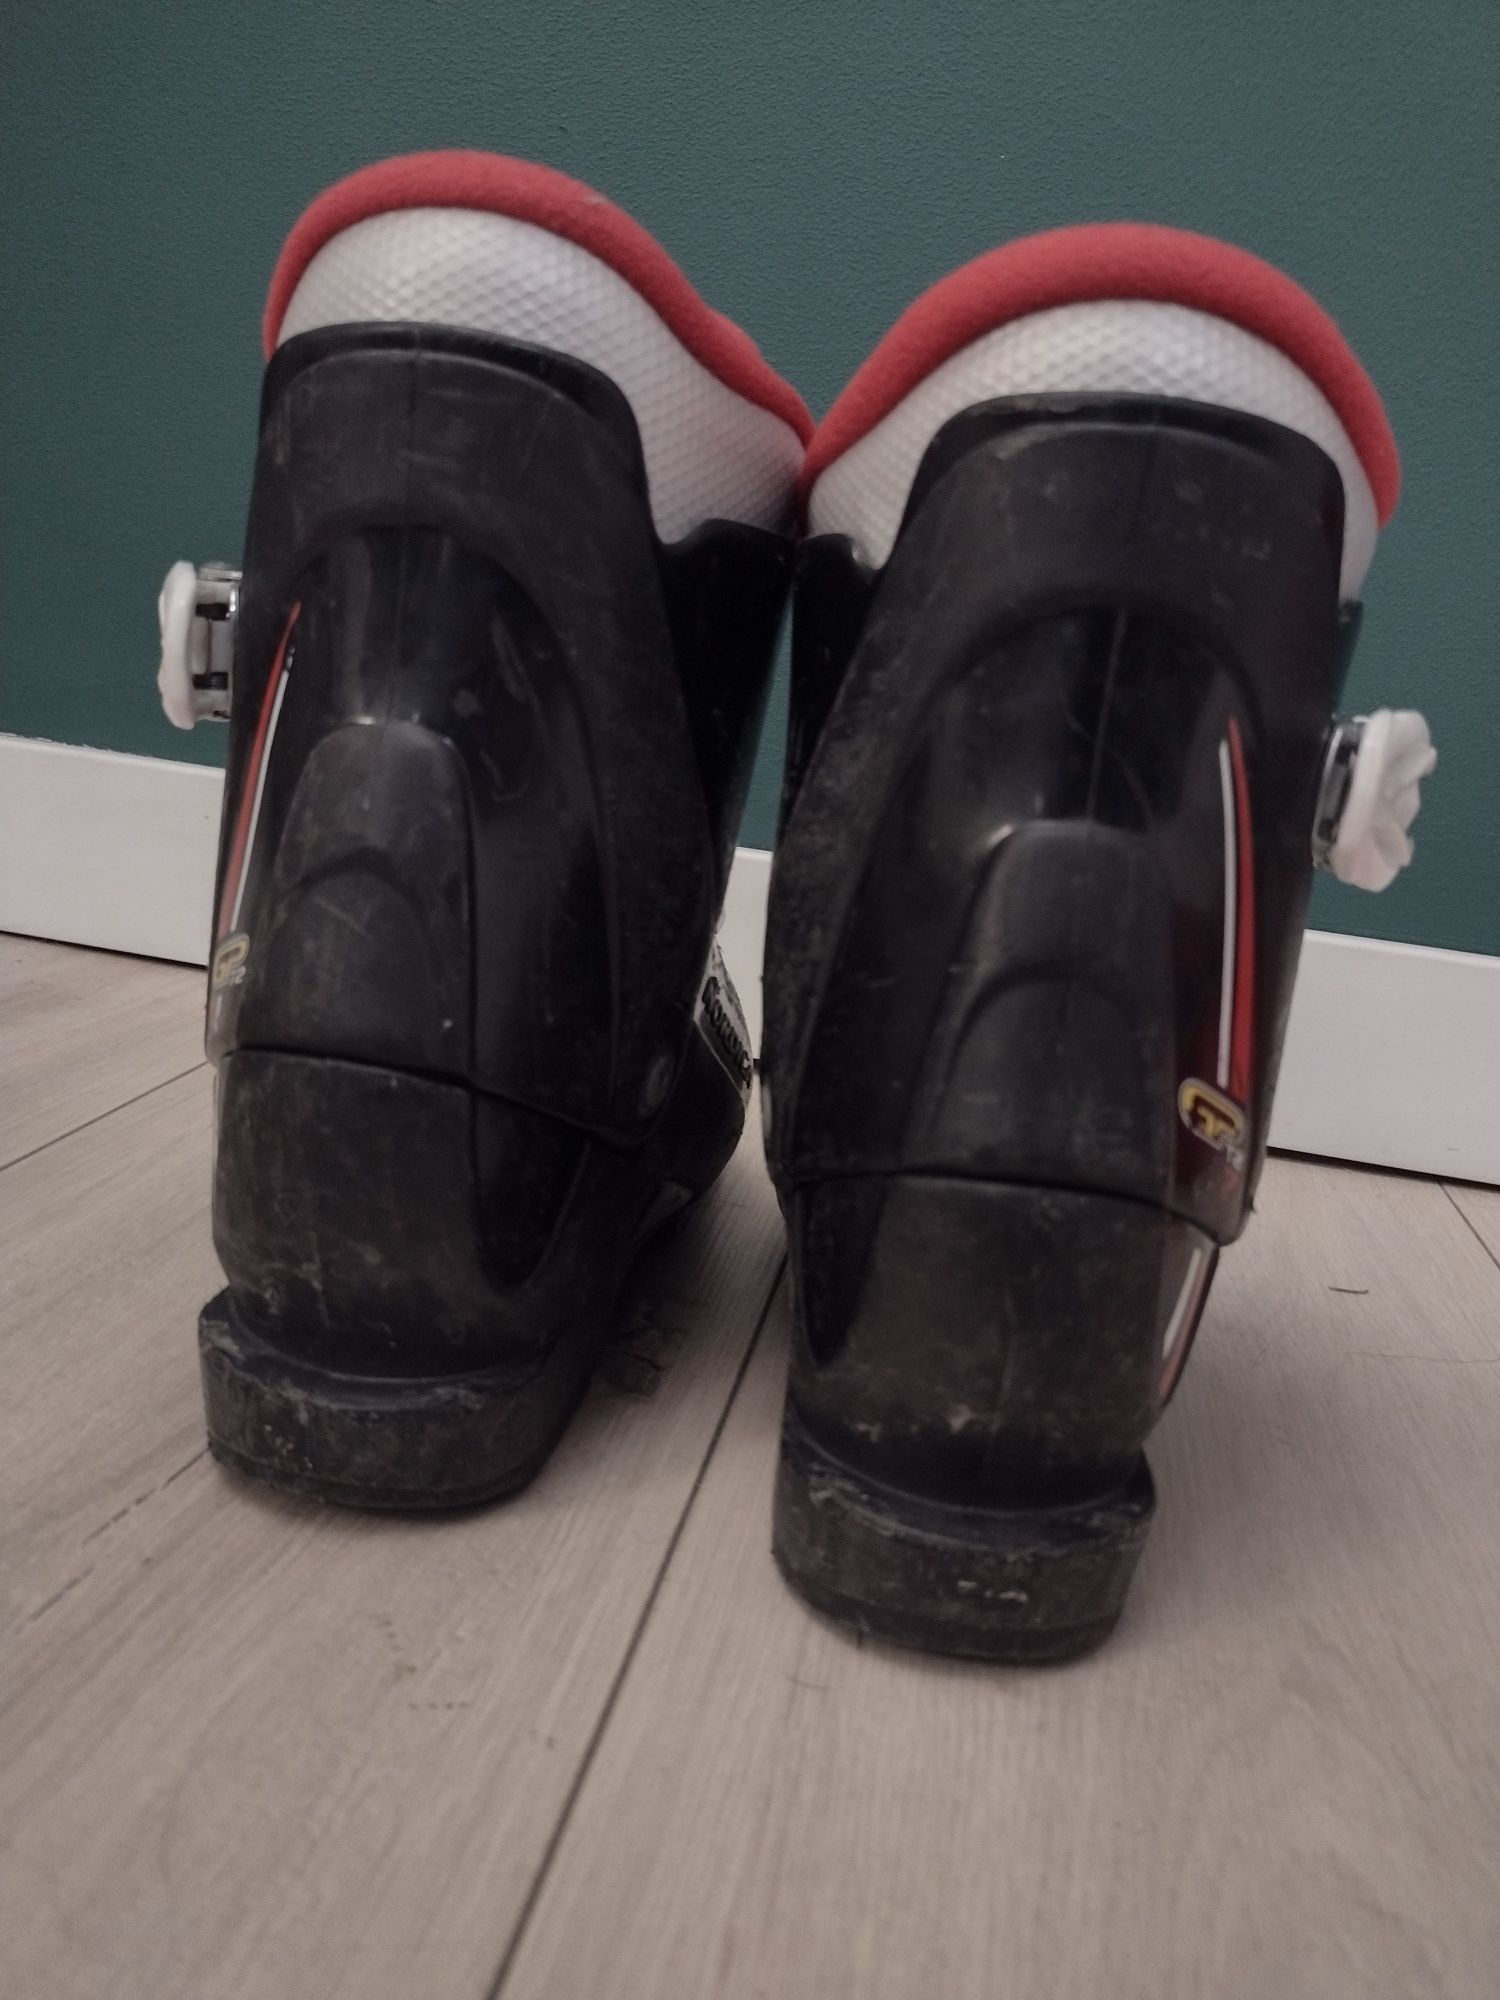 Buty narciarskie, 19,5cm wkładka, 22,4cm skorupa